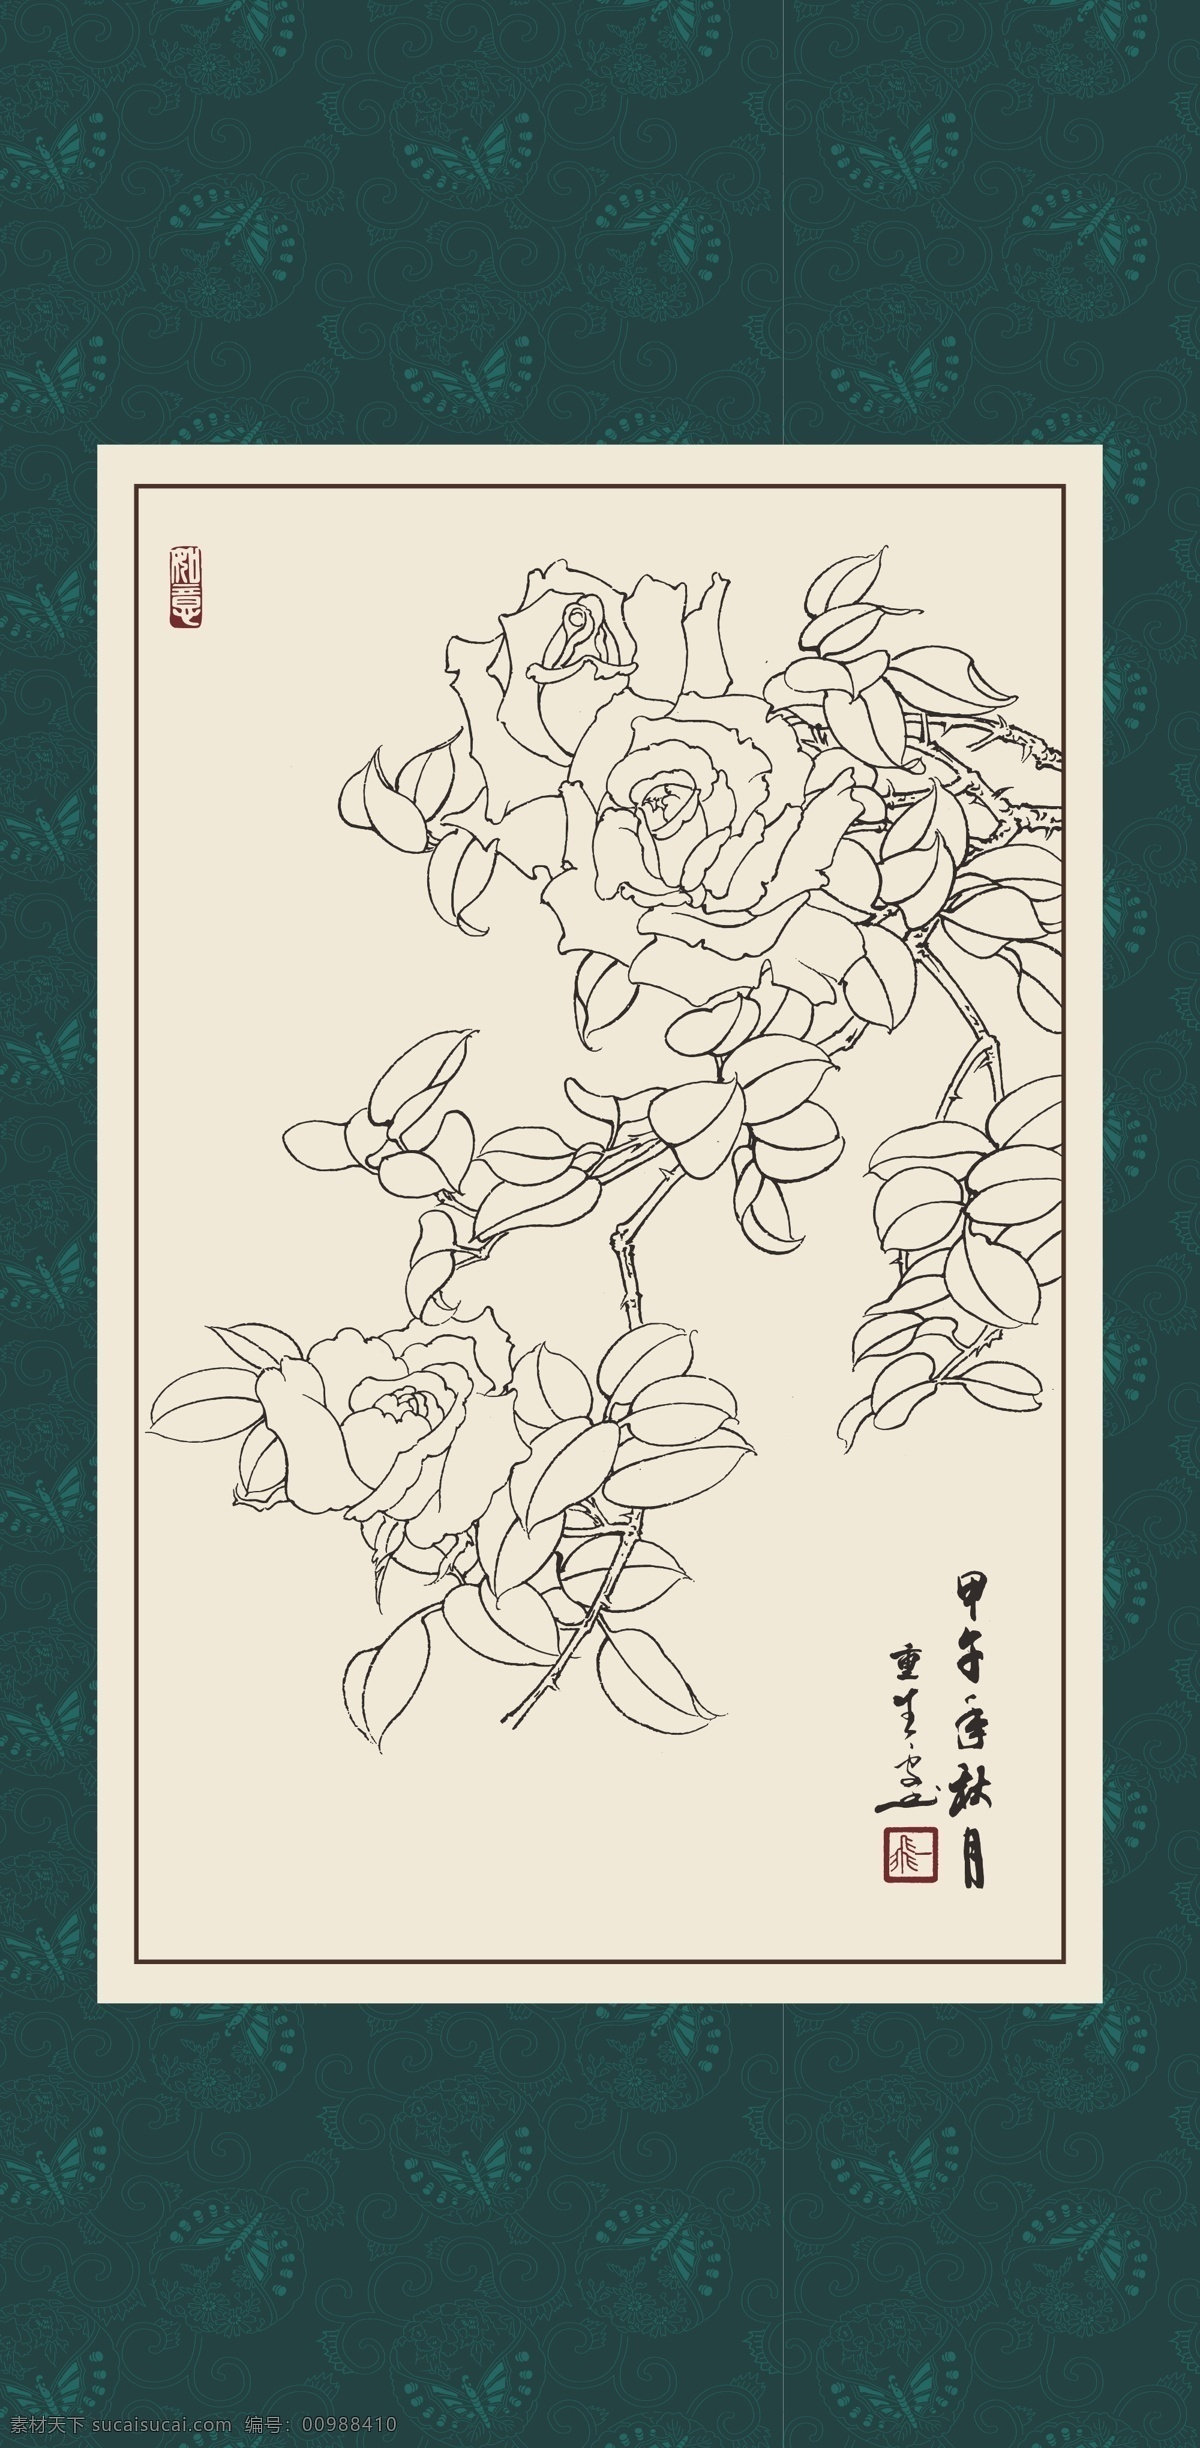 白描 线描 绘画 手绘 国画 印章 植物 花卉 工笔 gx150108 白描月季 玫瑰 文化艺术 绘画书法